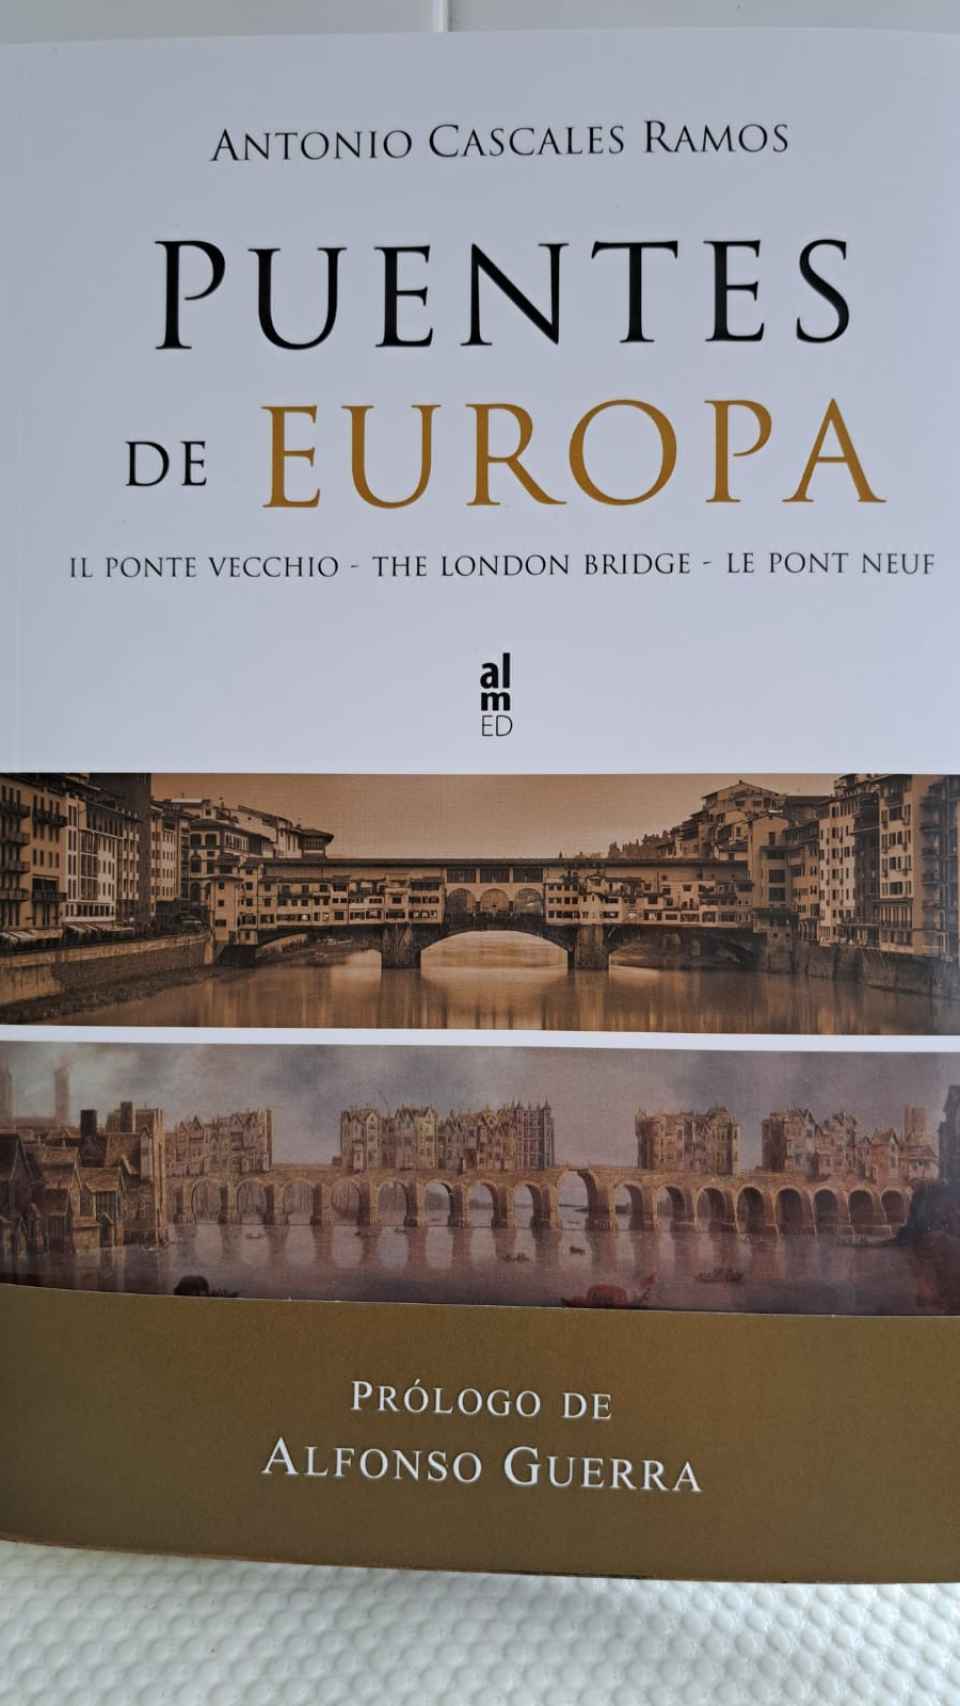 El libro Puentes de Europa, de Antonio Cascales Ramos